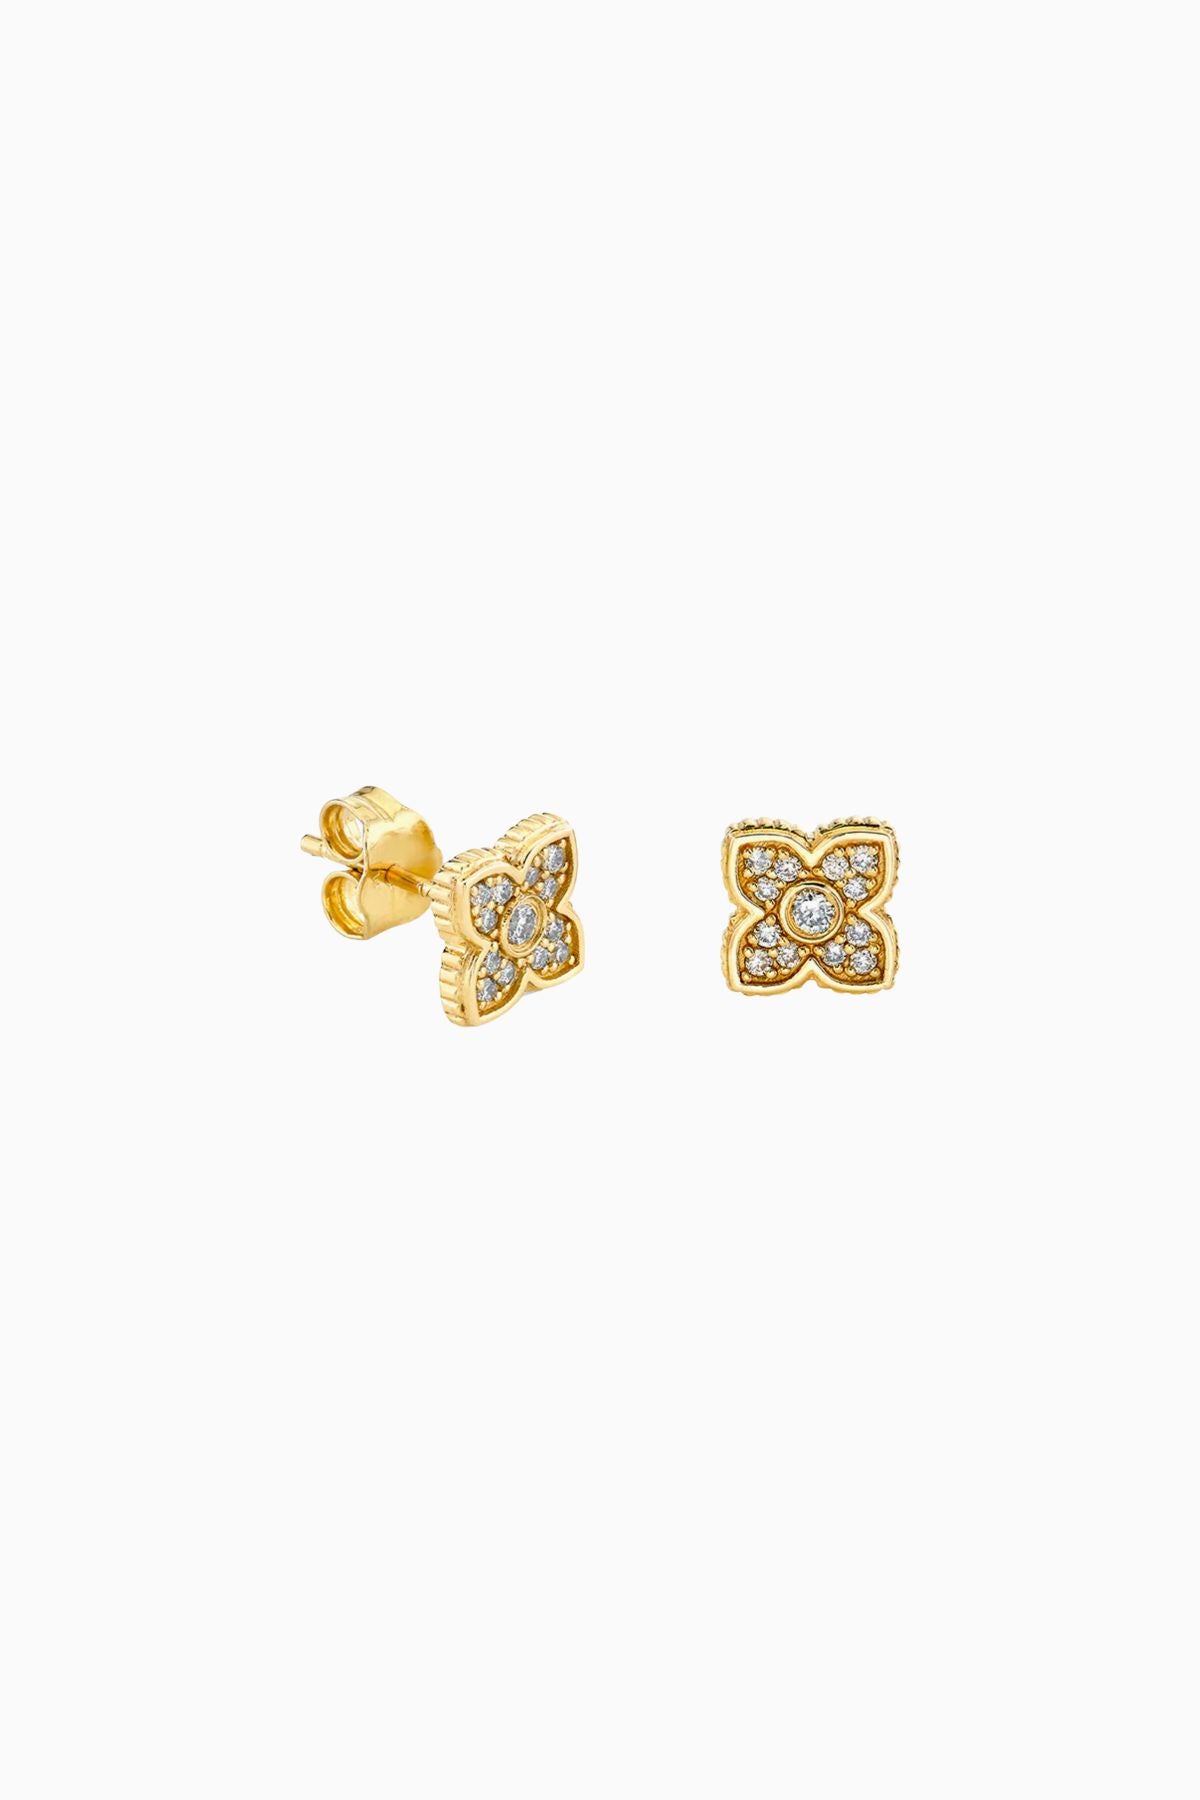 Sydney Evan Mini Bezel Moroccan Flower Stud Earrings - Yellow Gold